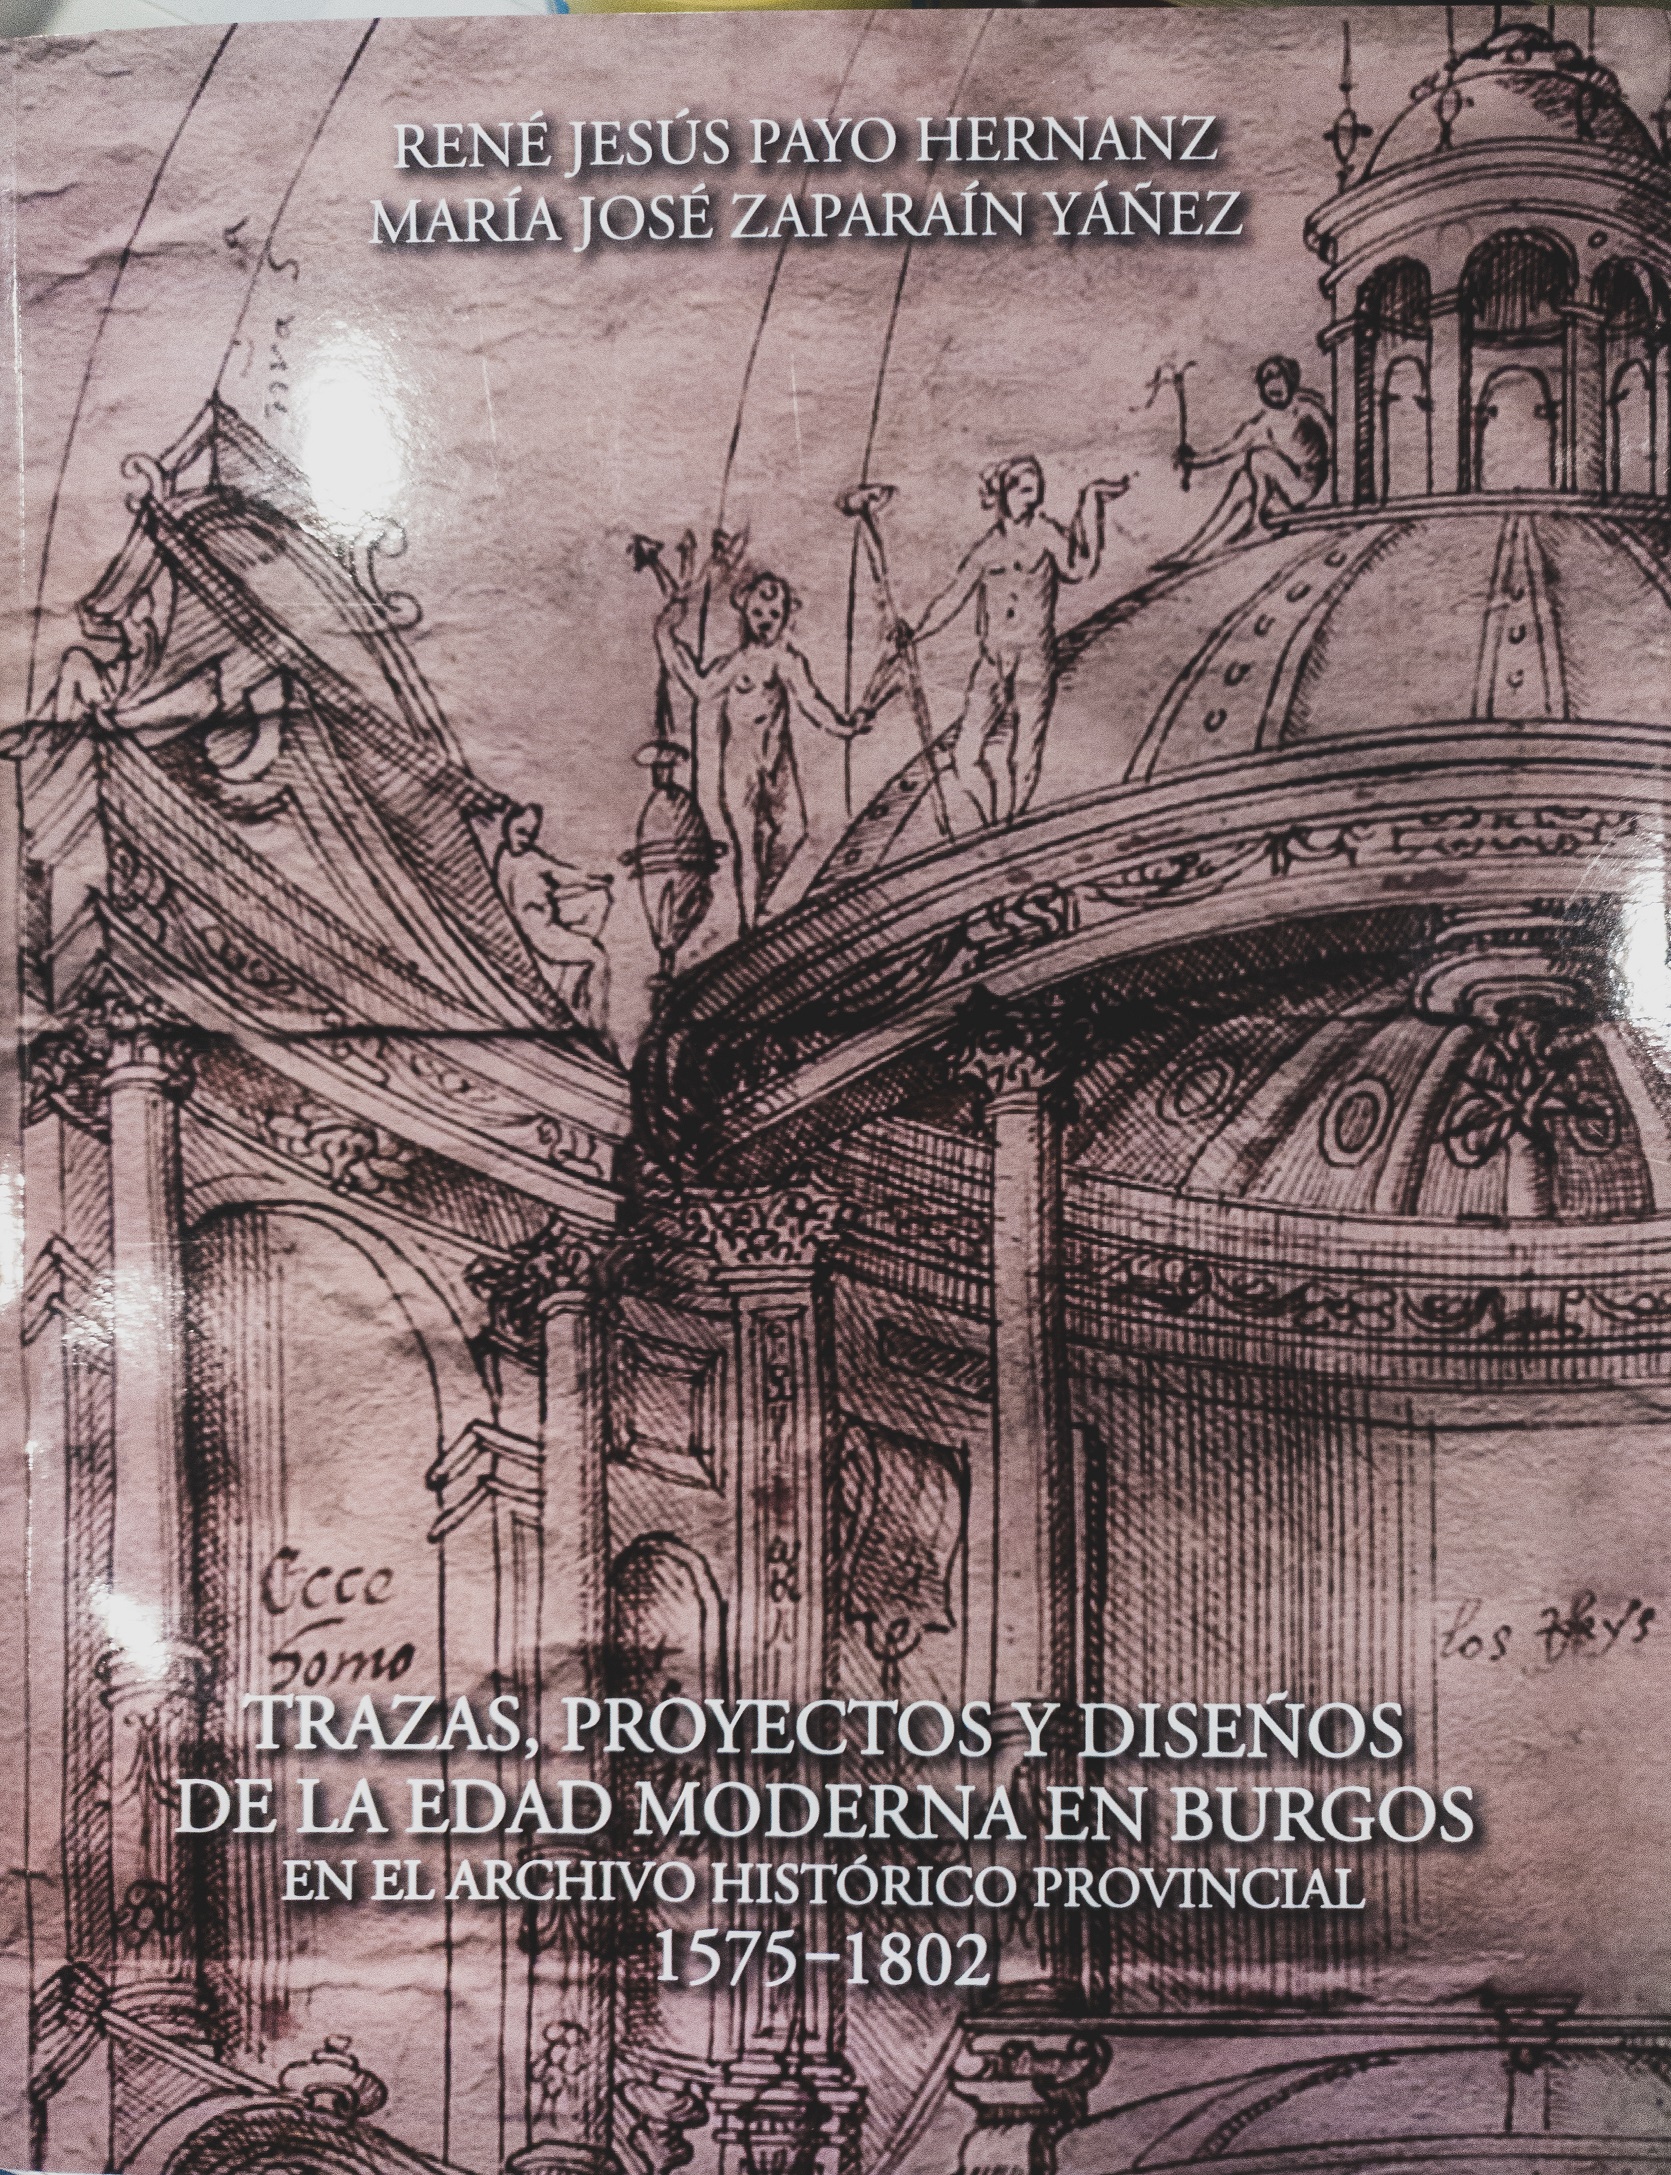 Imagen de portada del libro Trazas, proyectos y diseños de la Edad Moderna en Burgos en el Archivo Histórico Provincial, 1572-1802